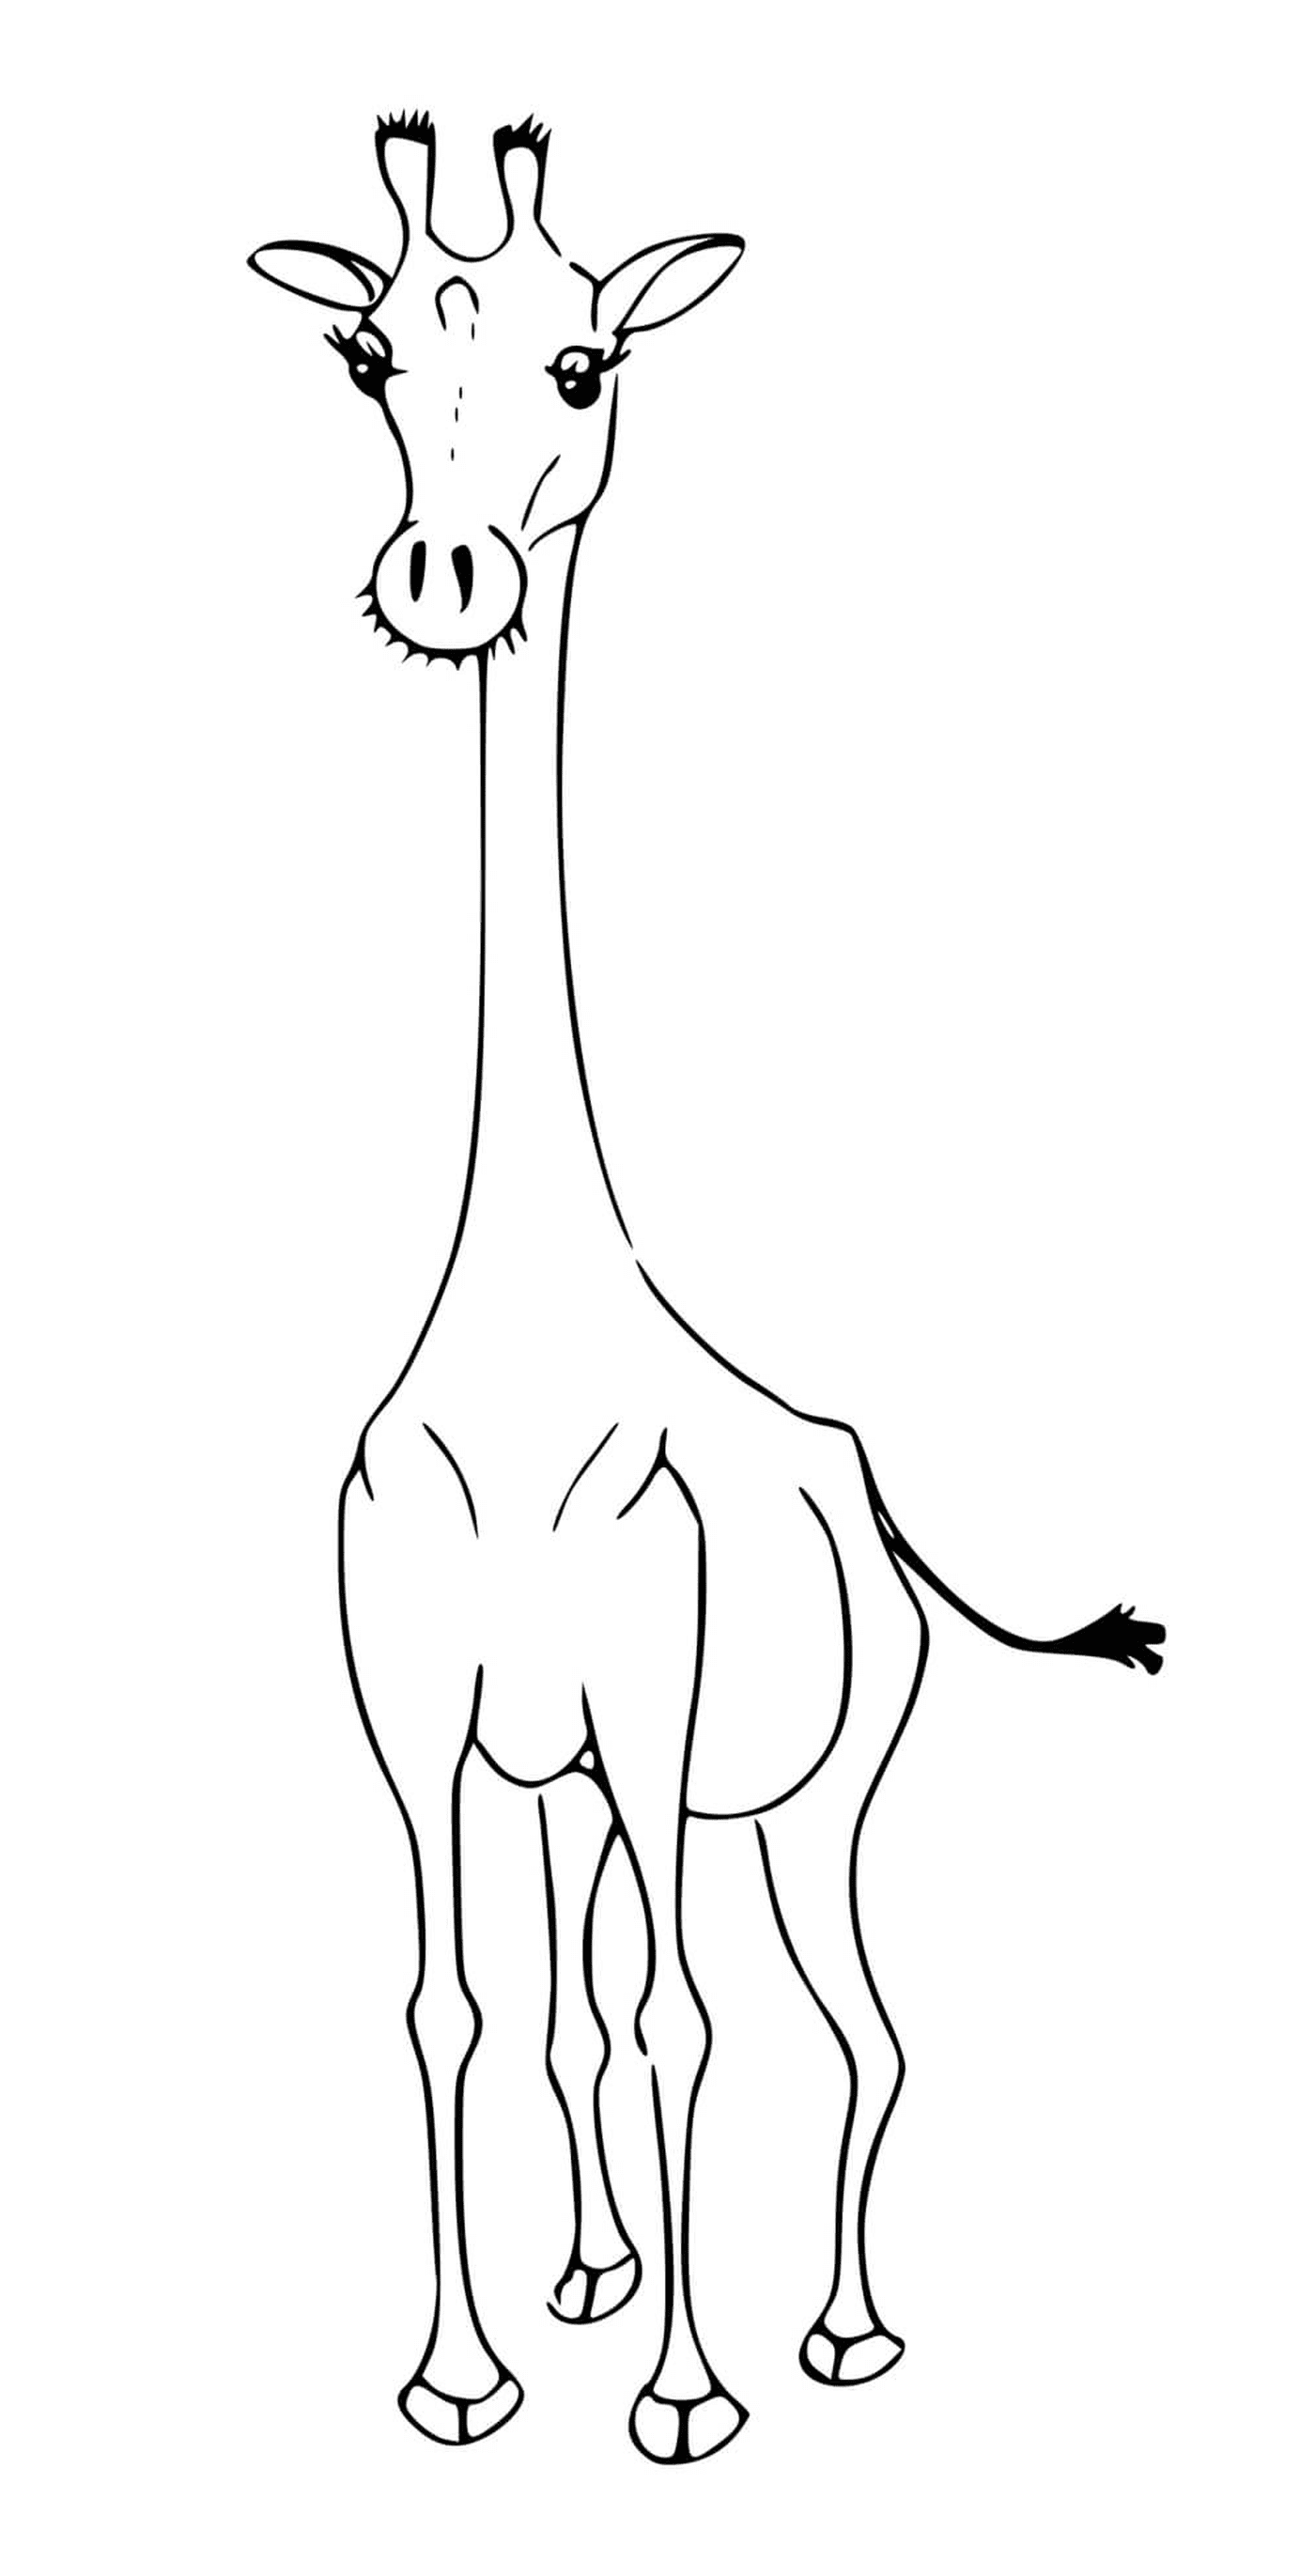  Uma girafa sem seus pontos característicos 